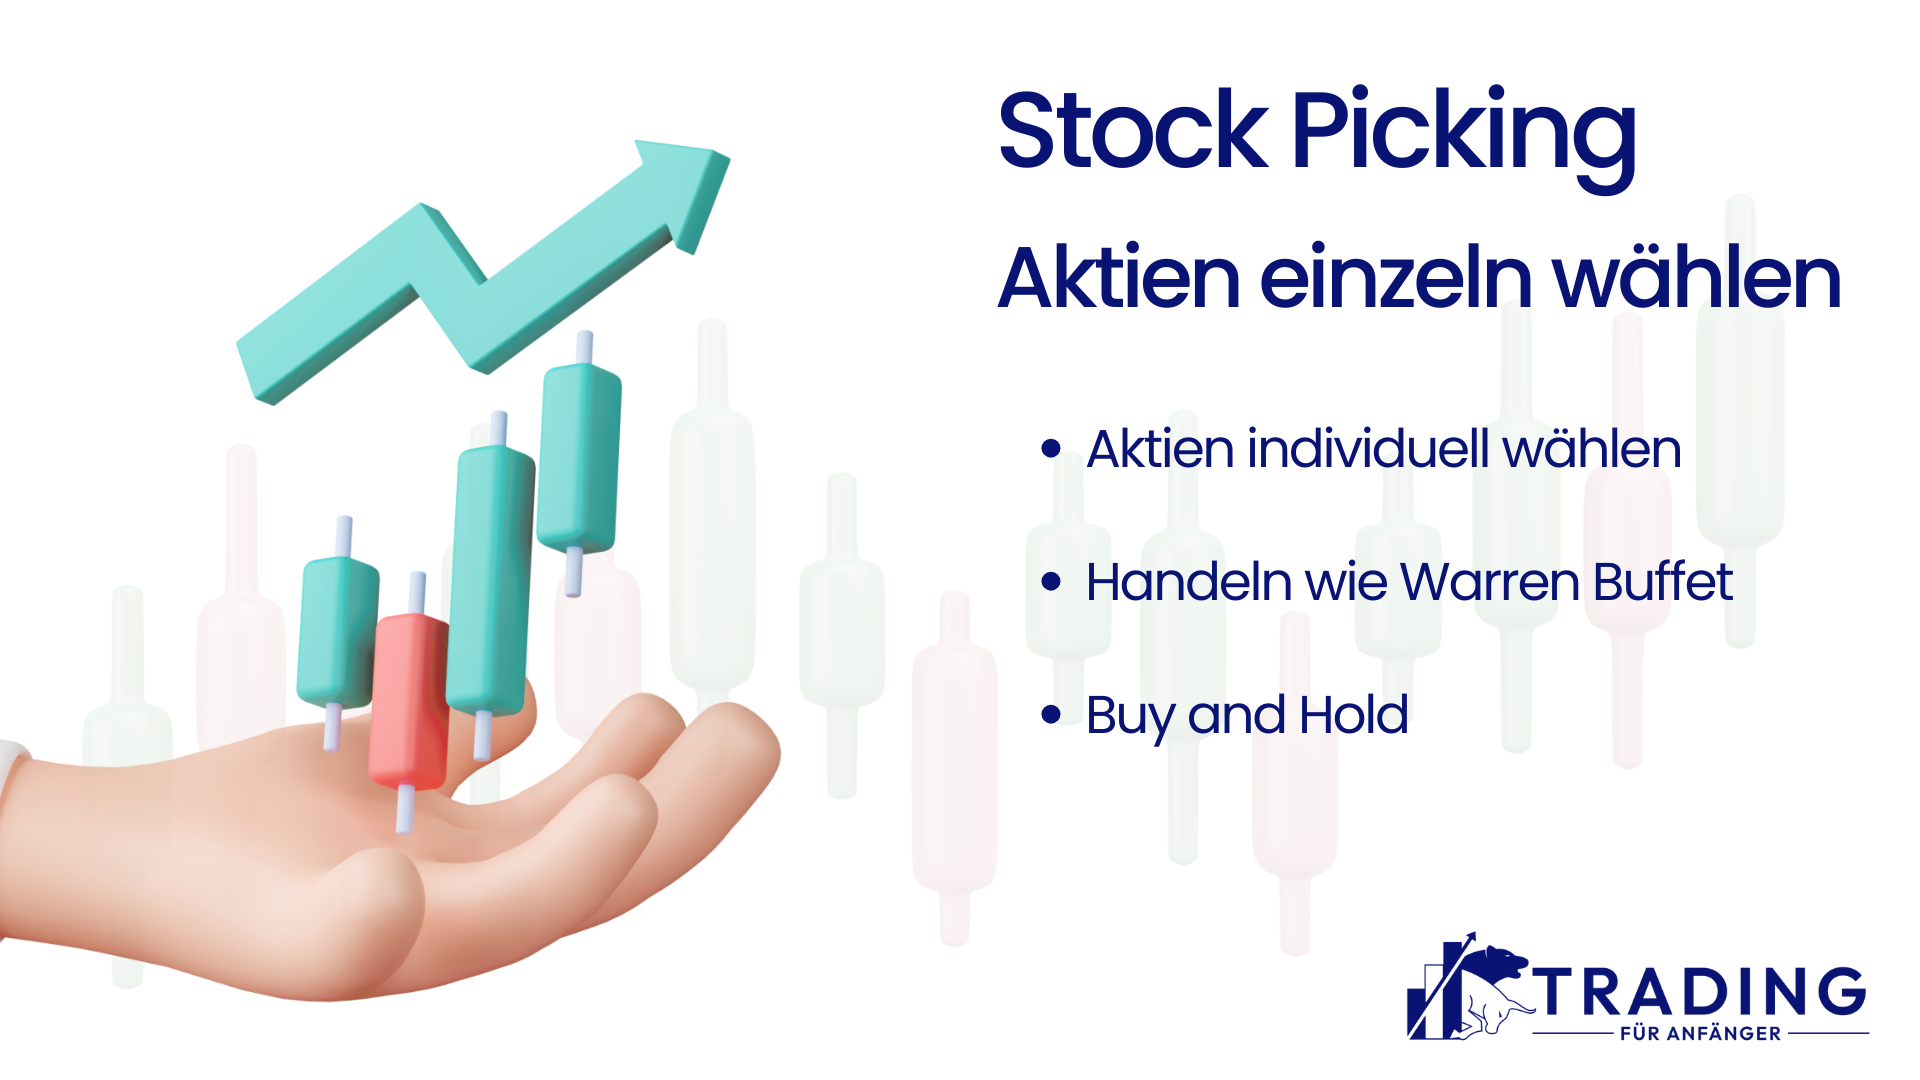 Stock Picking